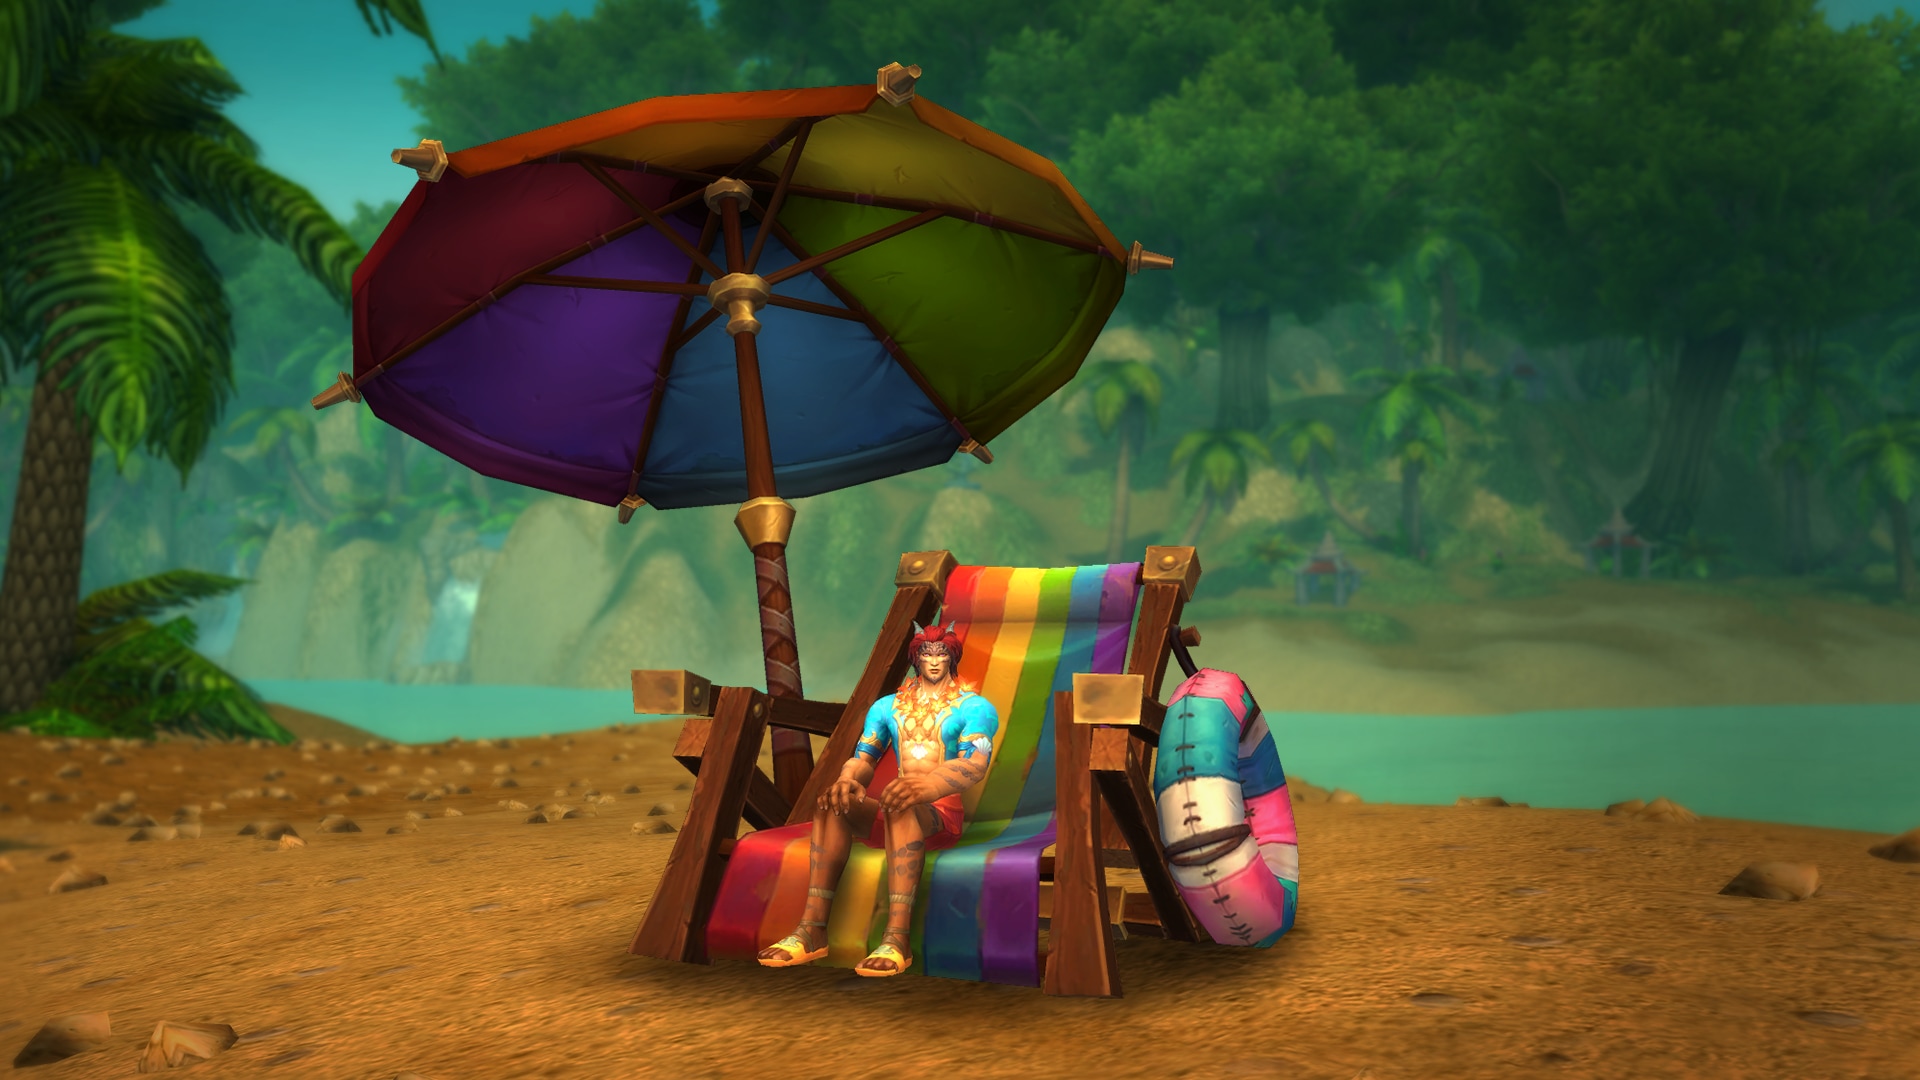 Strandstuhl und Sonnenschirm in Regenbogenfarben